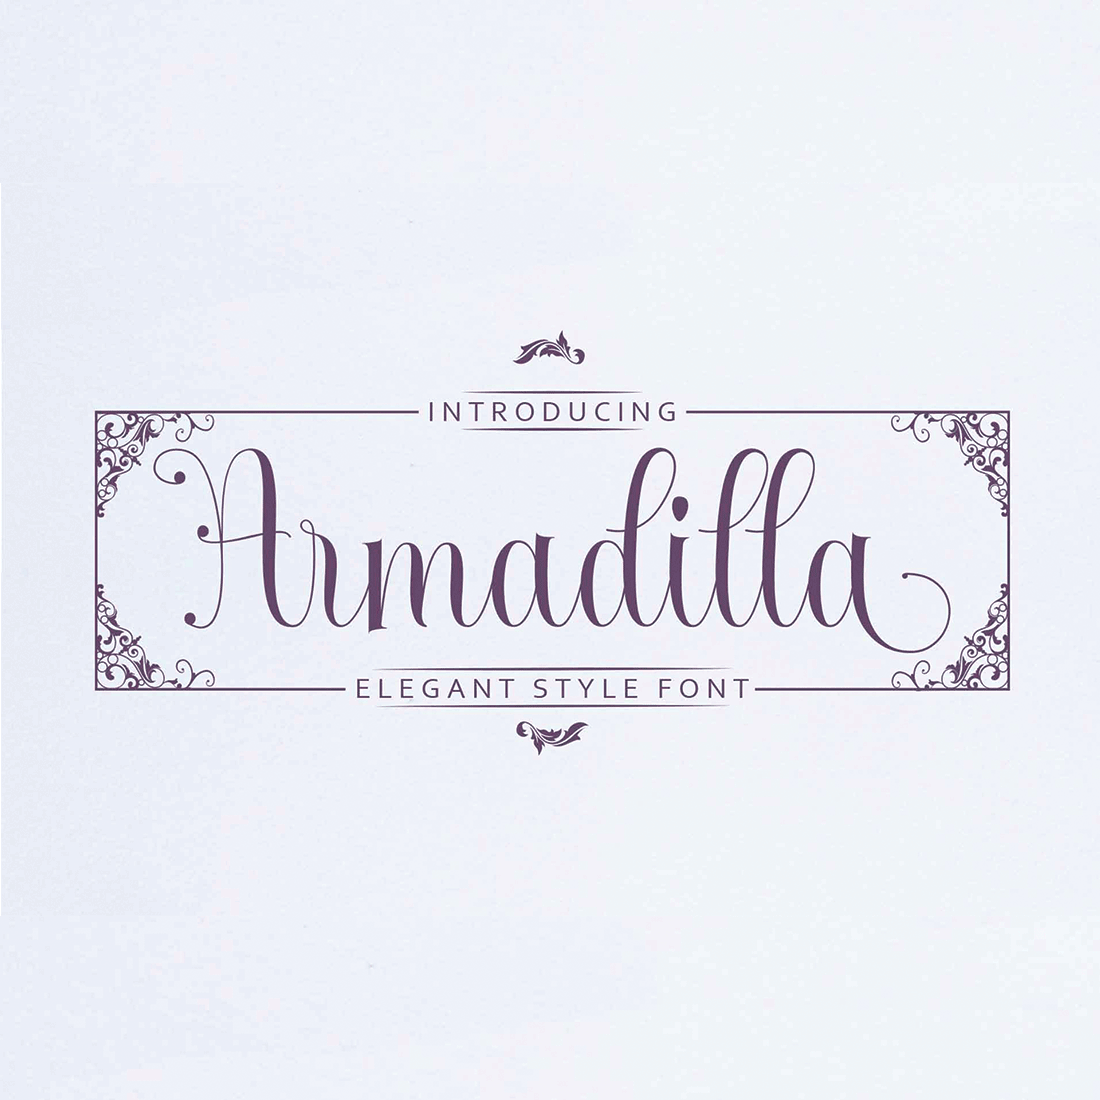 Armadilla cover image.